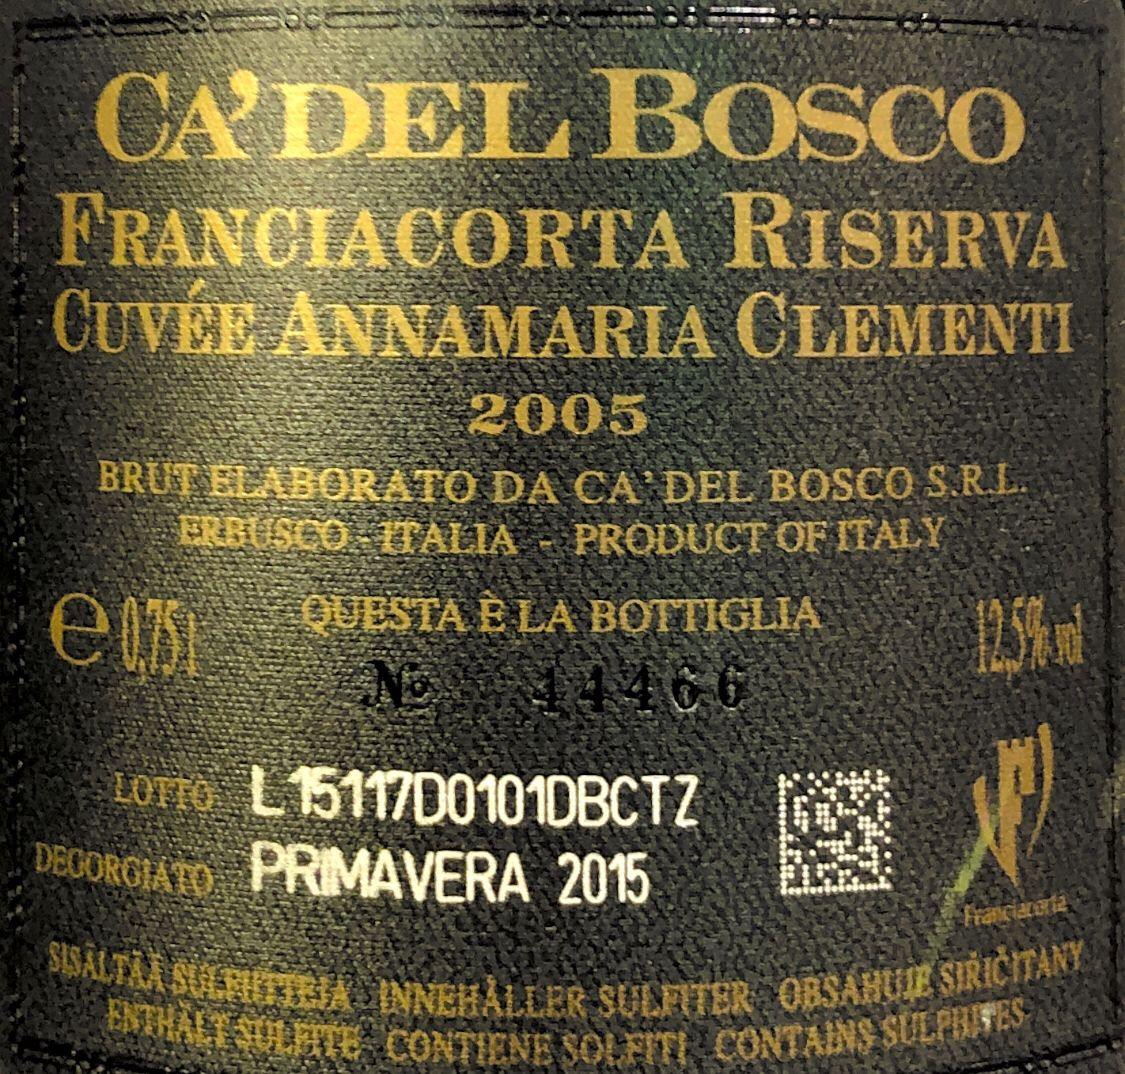 Spumante - Ca'del Bosco 2005 - 750ml. 12.5% vol. - Drugstore Napoli